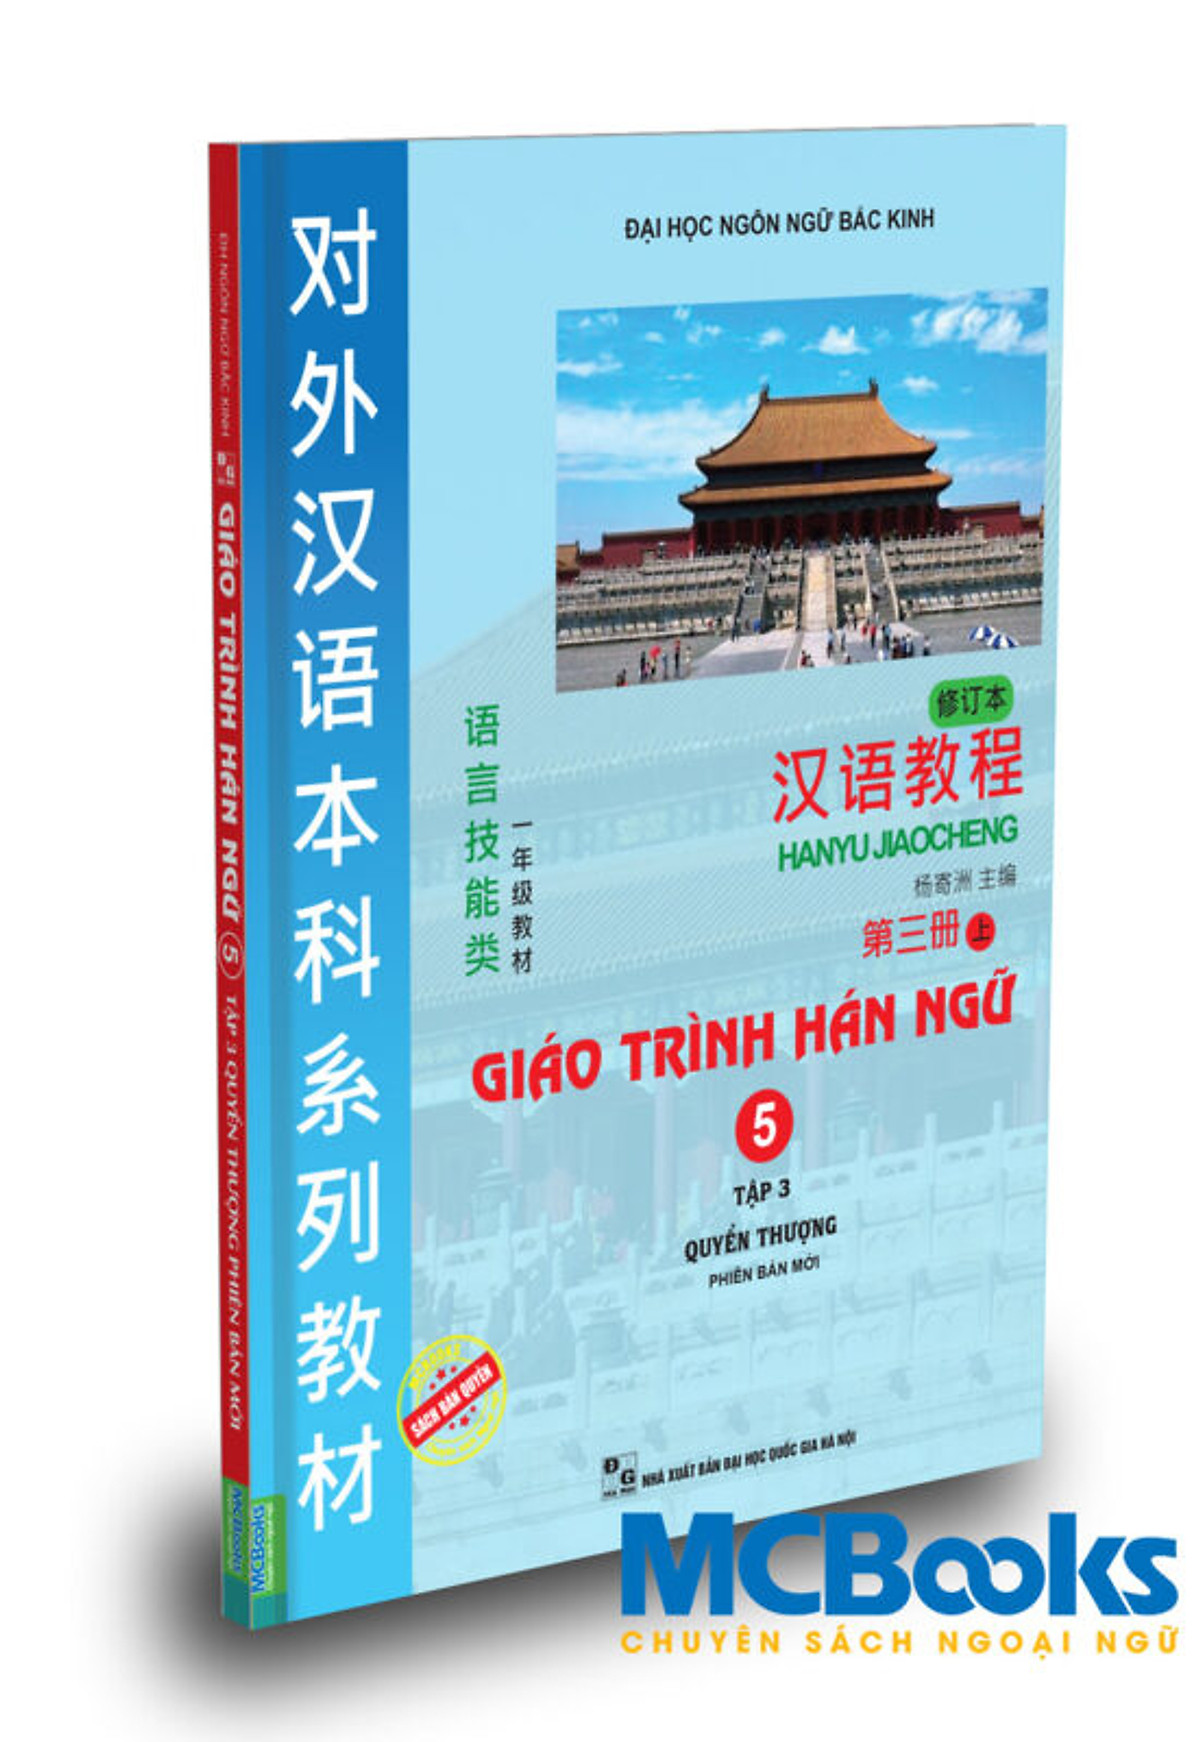 Giáo trình Hán ngữ 5 - tập 3 quyển thượng phiên bản mới tải app - TKBooks 